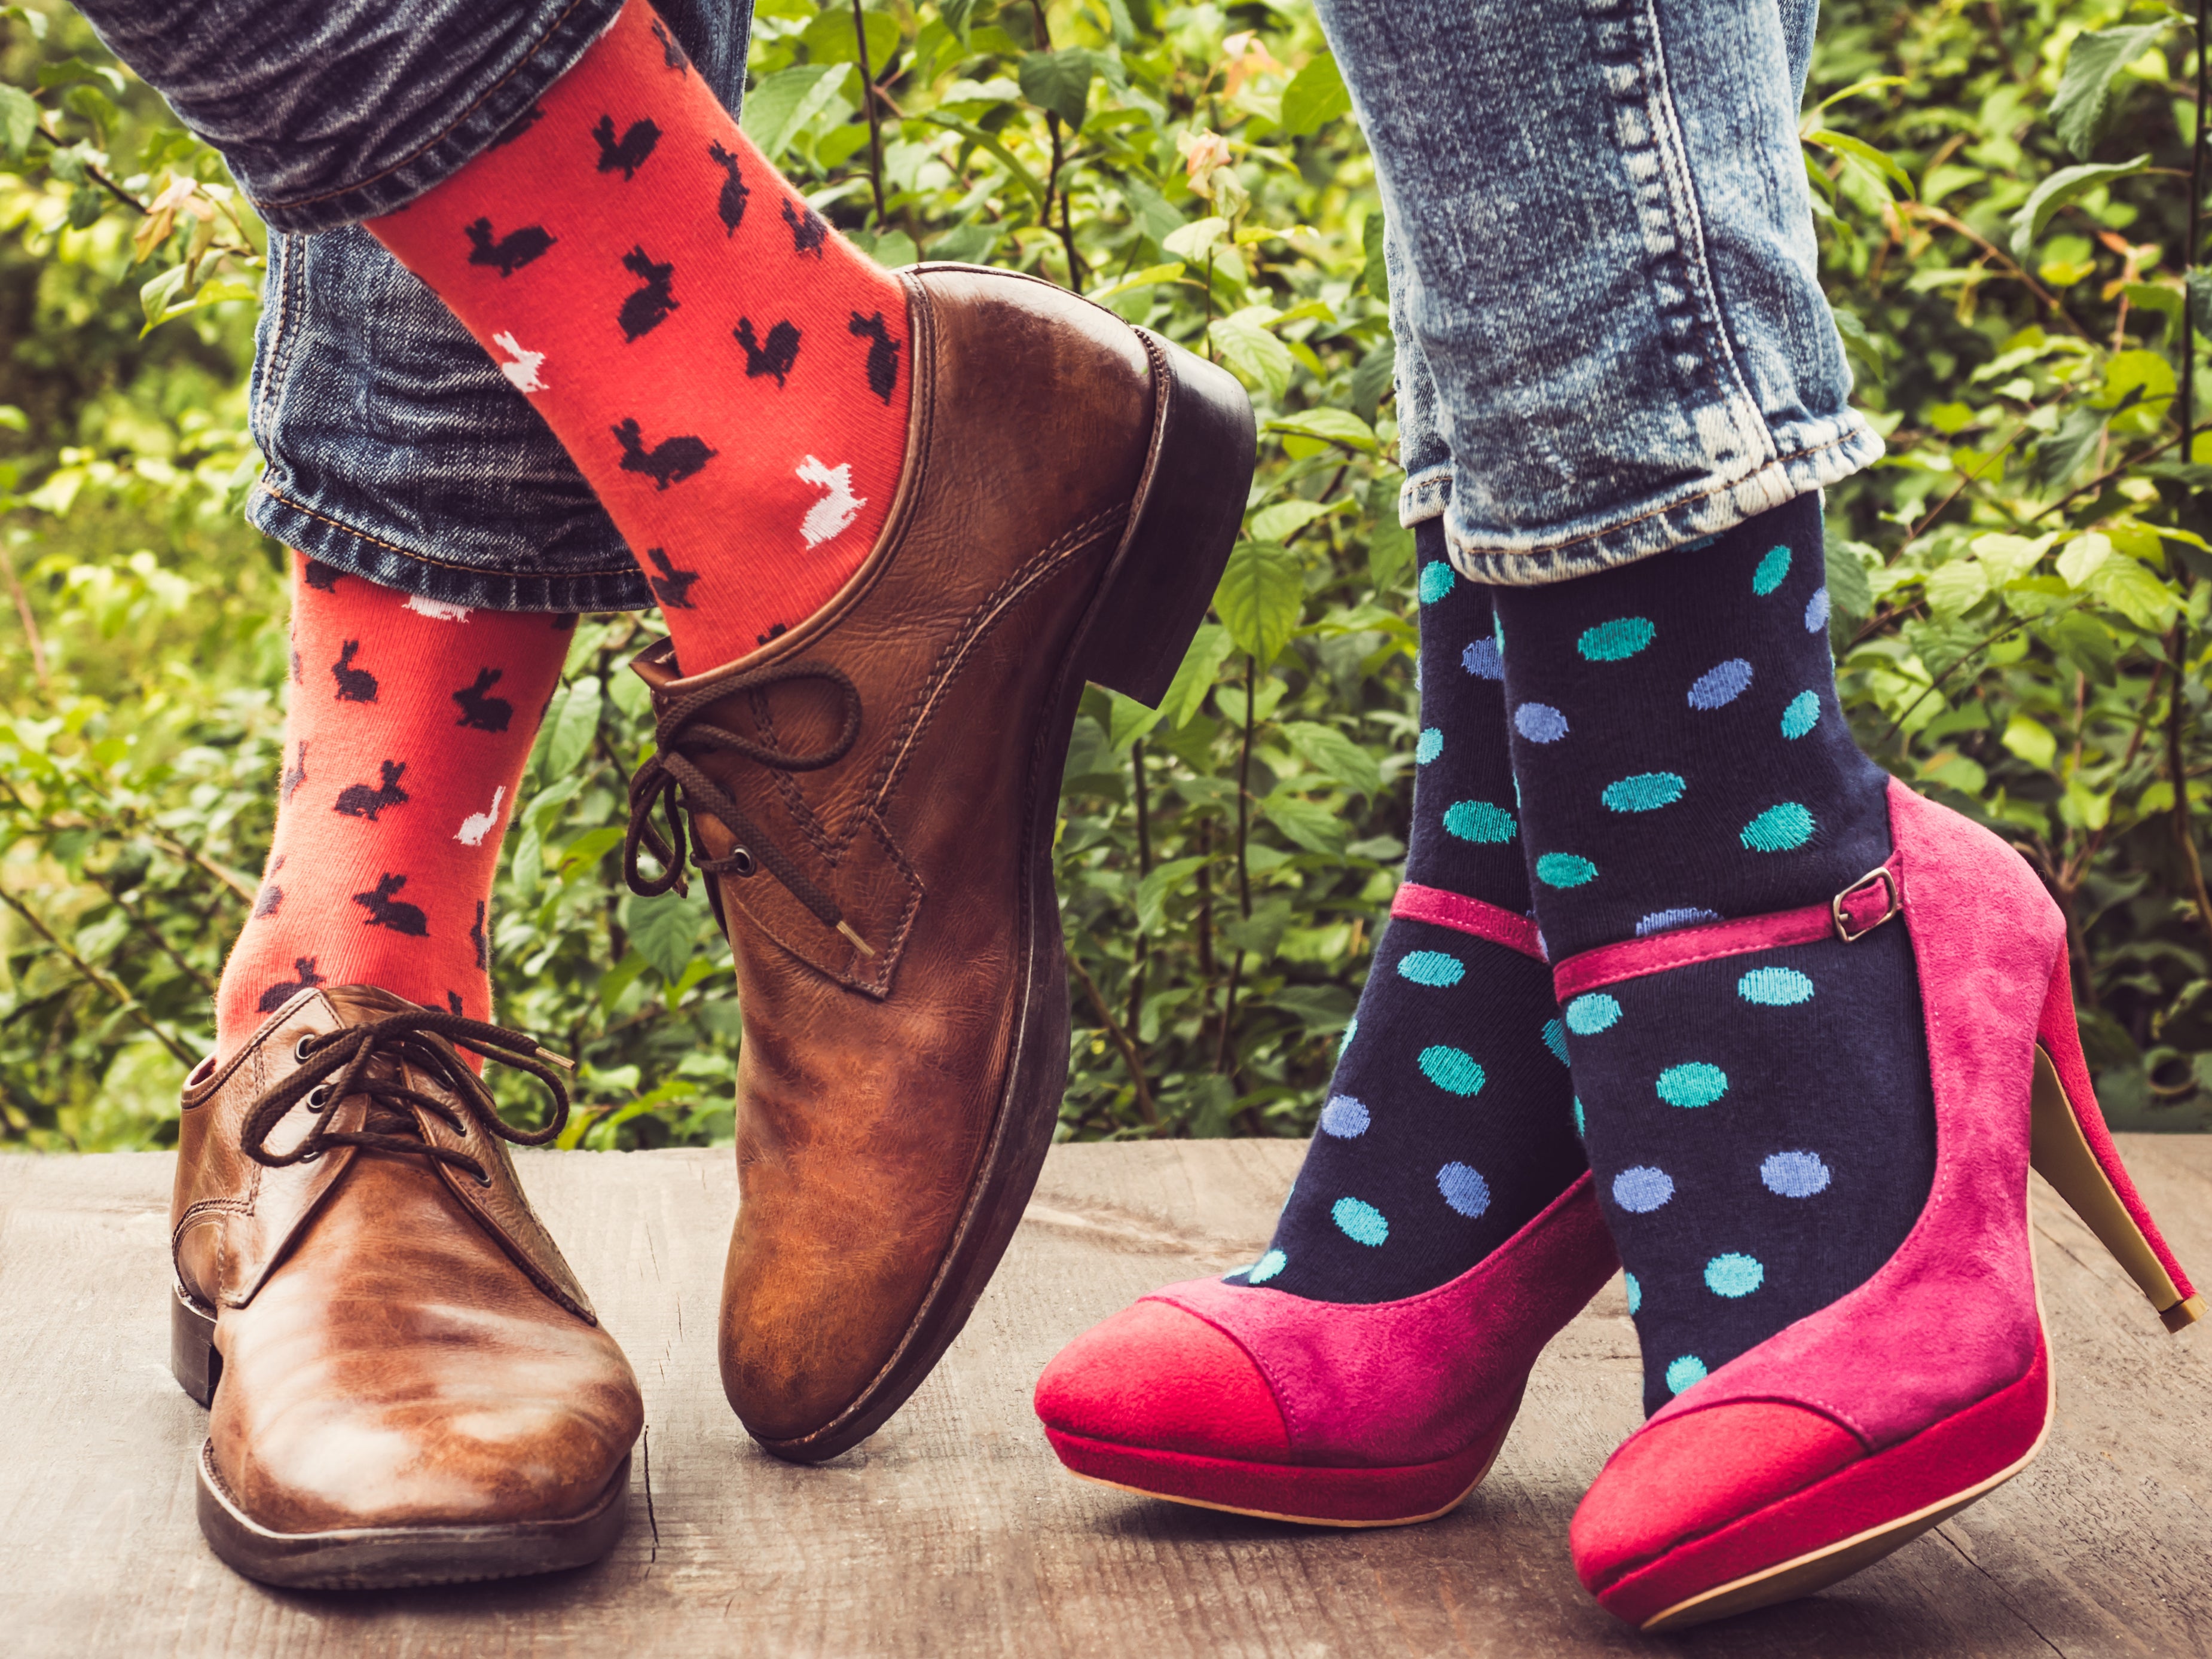 Usikker Er velkendte bekræfte Gode tips: Hvordan matcher du sjove strømper med din stil – Just Funny Socks